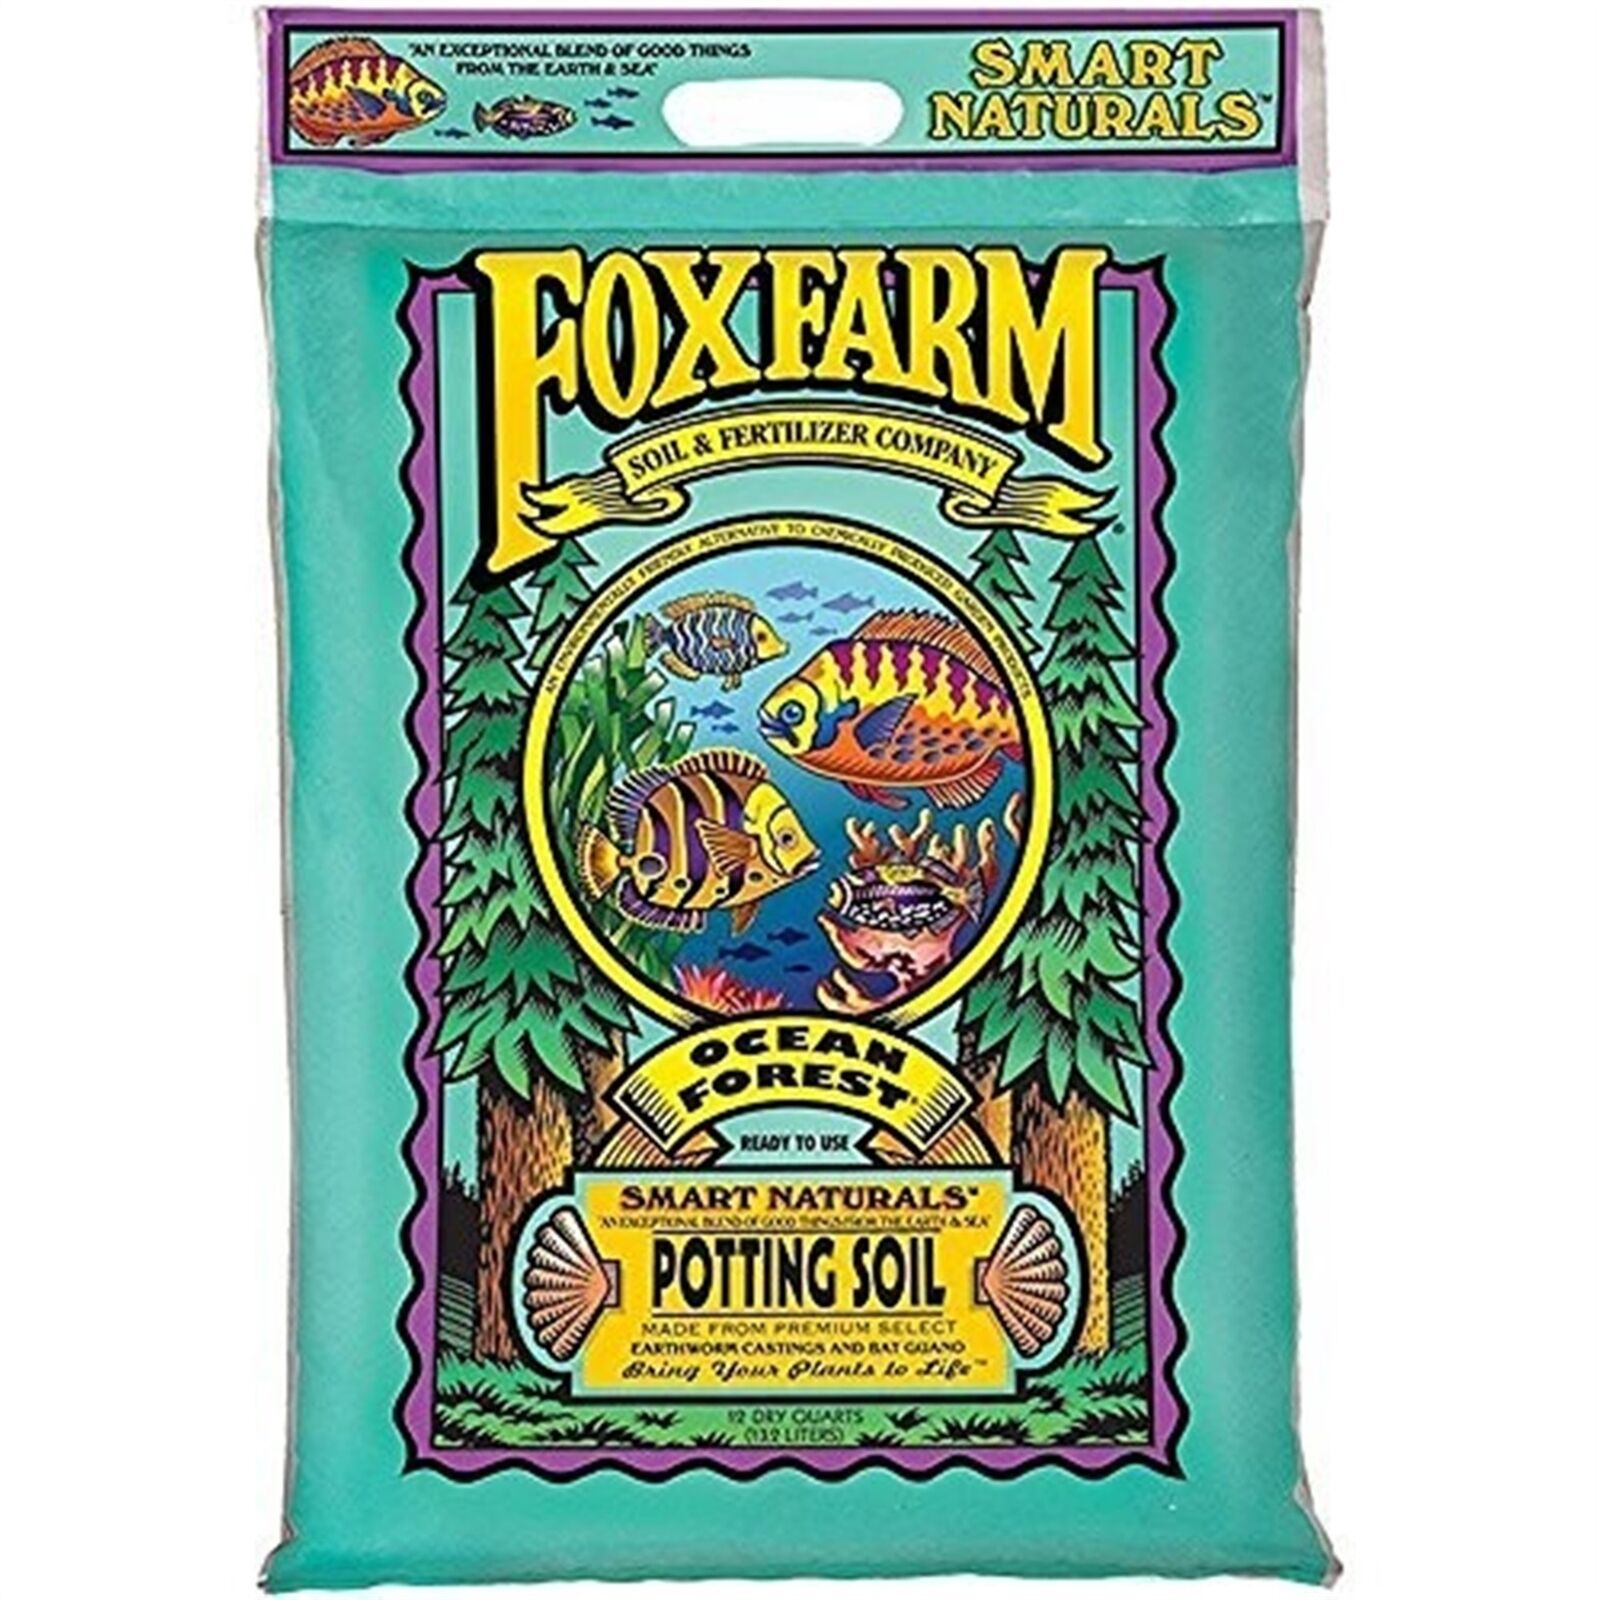 FoxFarm (#FX14053) Ocean Forest Potting Soil, 12-Quart (Pack of 1)